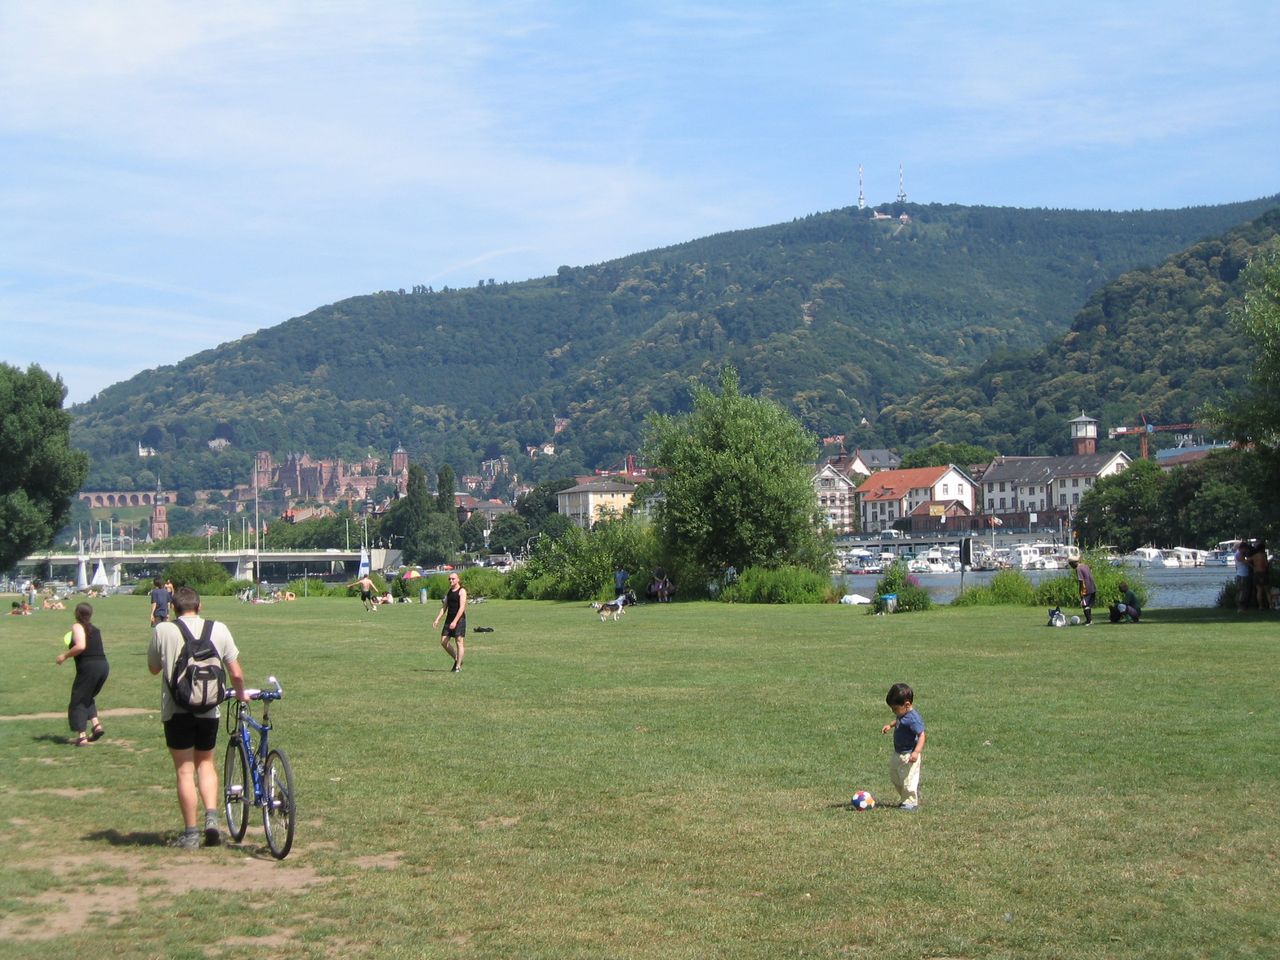 3 Tage Kurzurlaub in Heidelberg und Familien-Badespaß